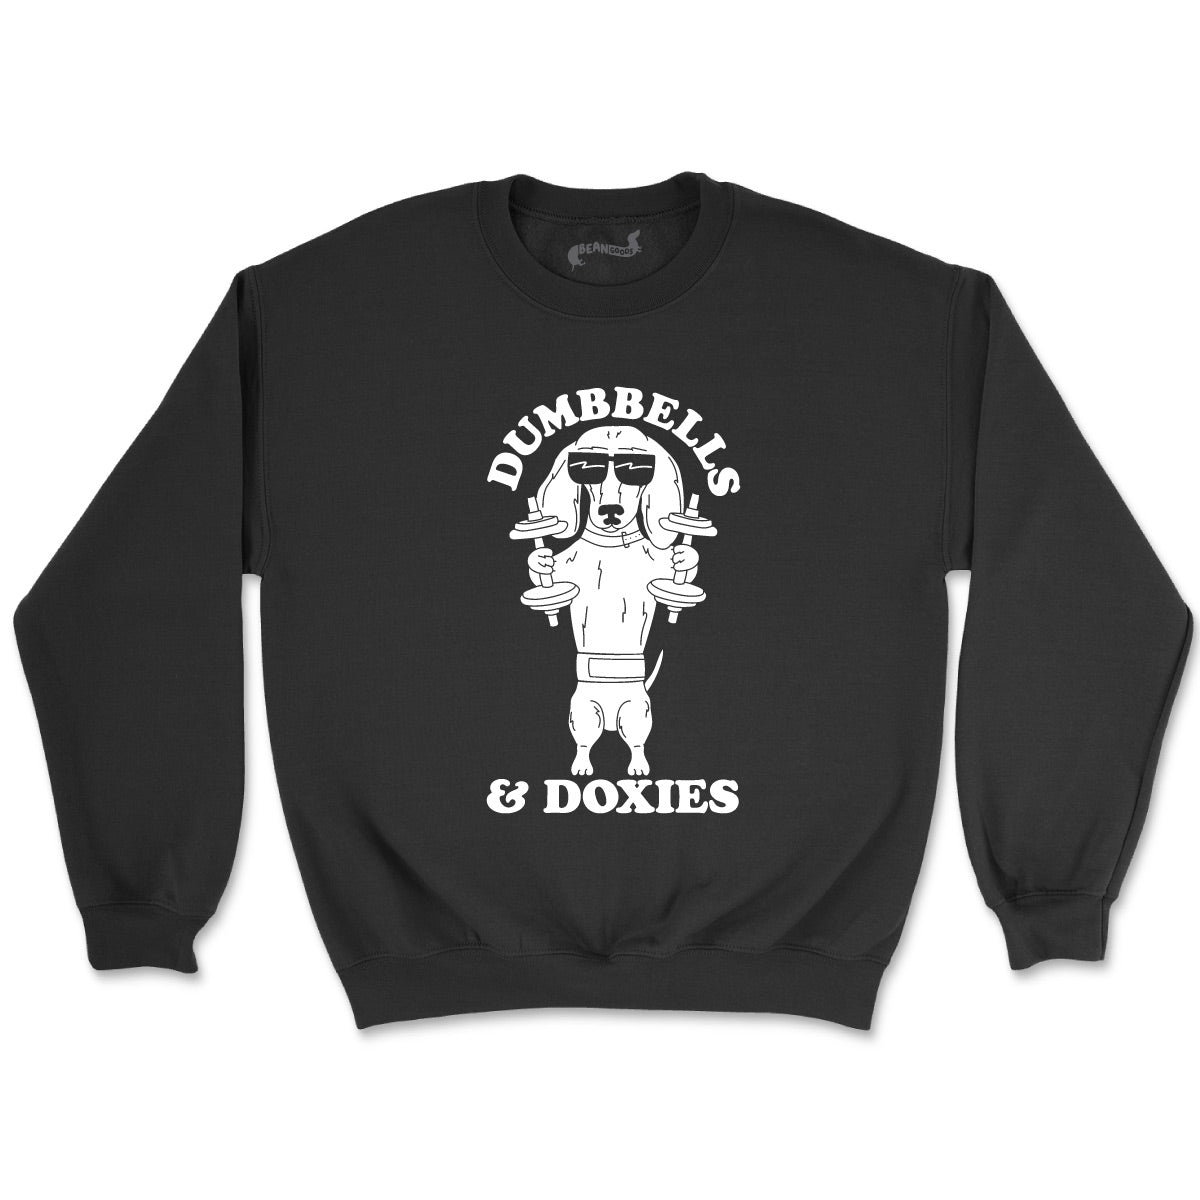 dumbbells & doxies unisex crew sweatshirt - bean goods